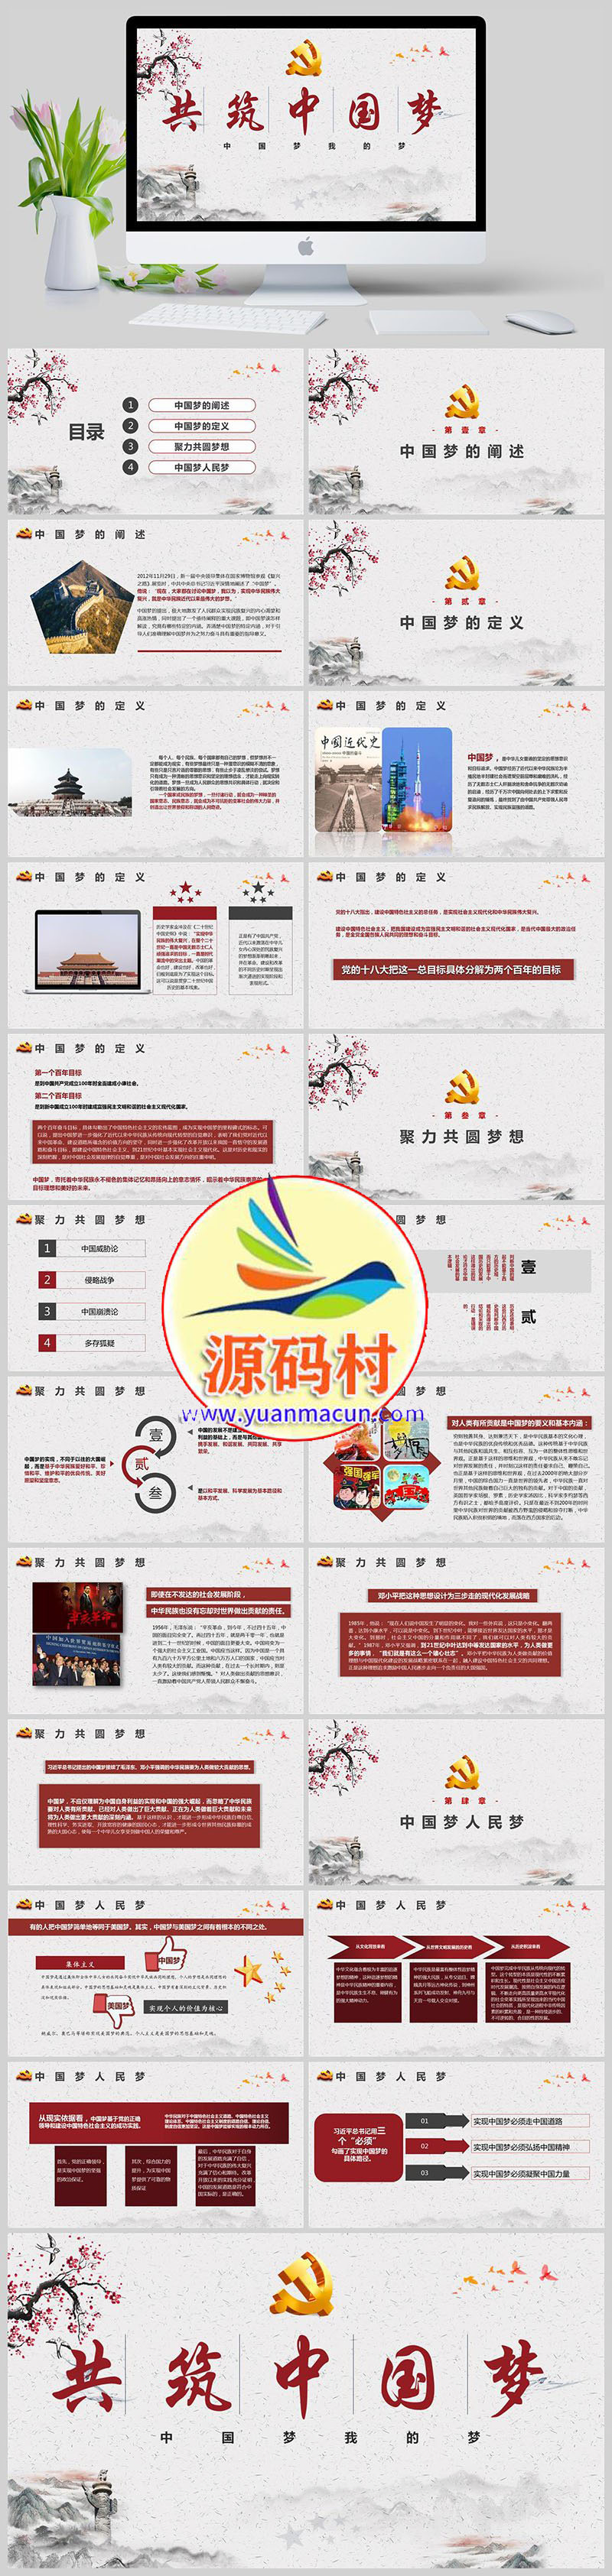 水墨中国风共筑中国梦建党政府PPT模板免费下载,123.jpg,第1张